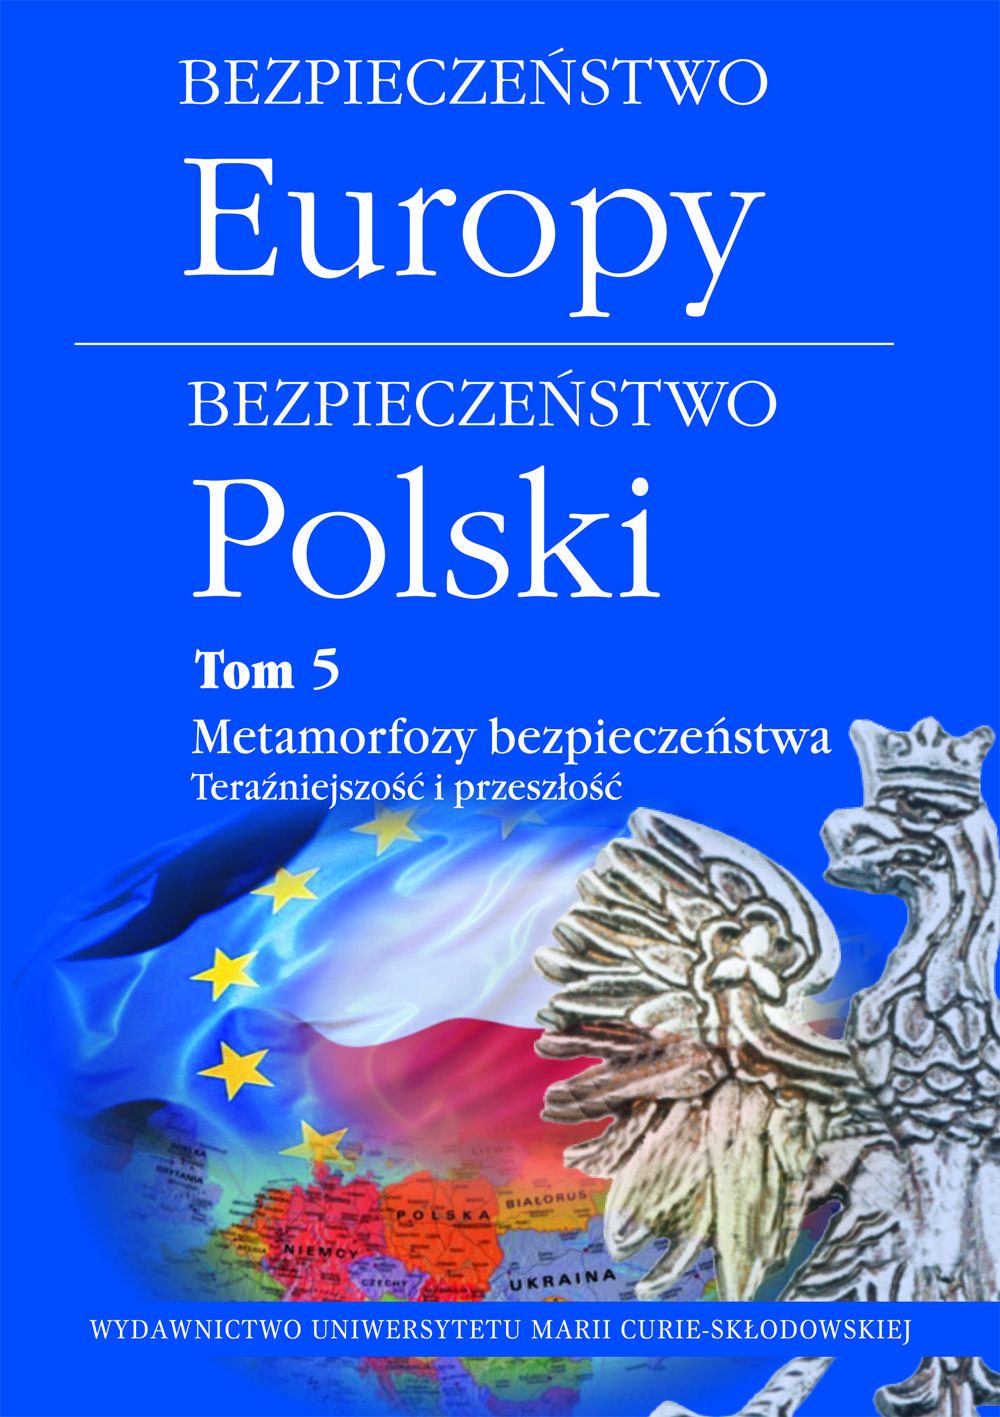 Okładka: Bezpieczeństwo Europy - bezpieczeństwo Polski t. 5: Metamorfozy bezpieczeństwa. Teraźniejszość i przeszłość